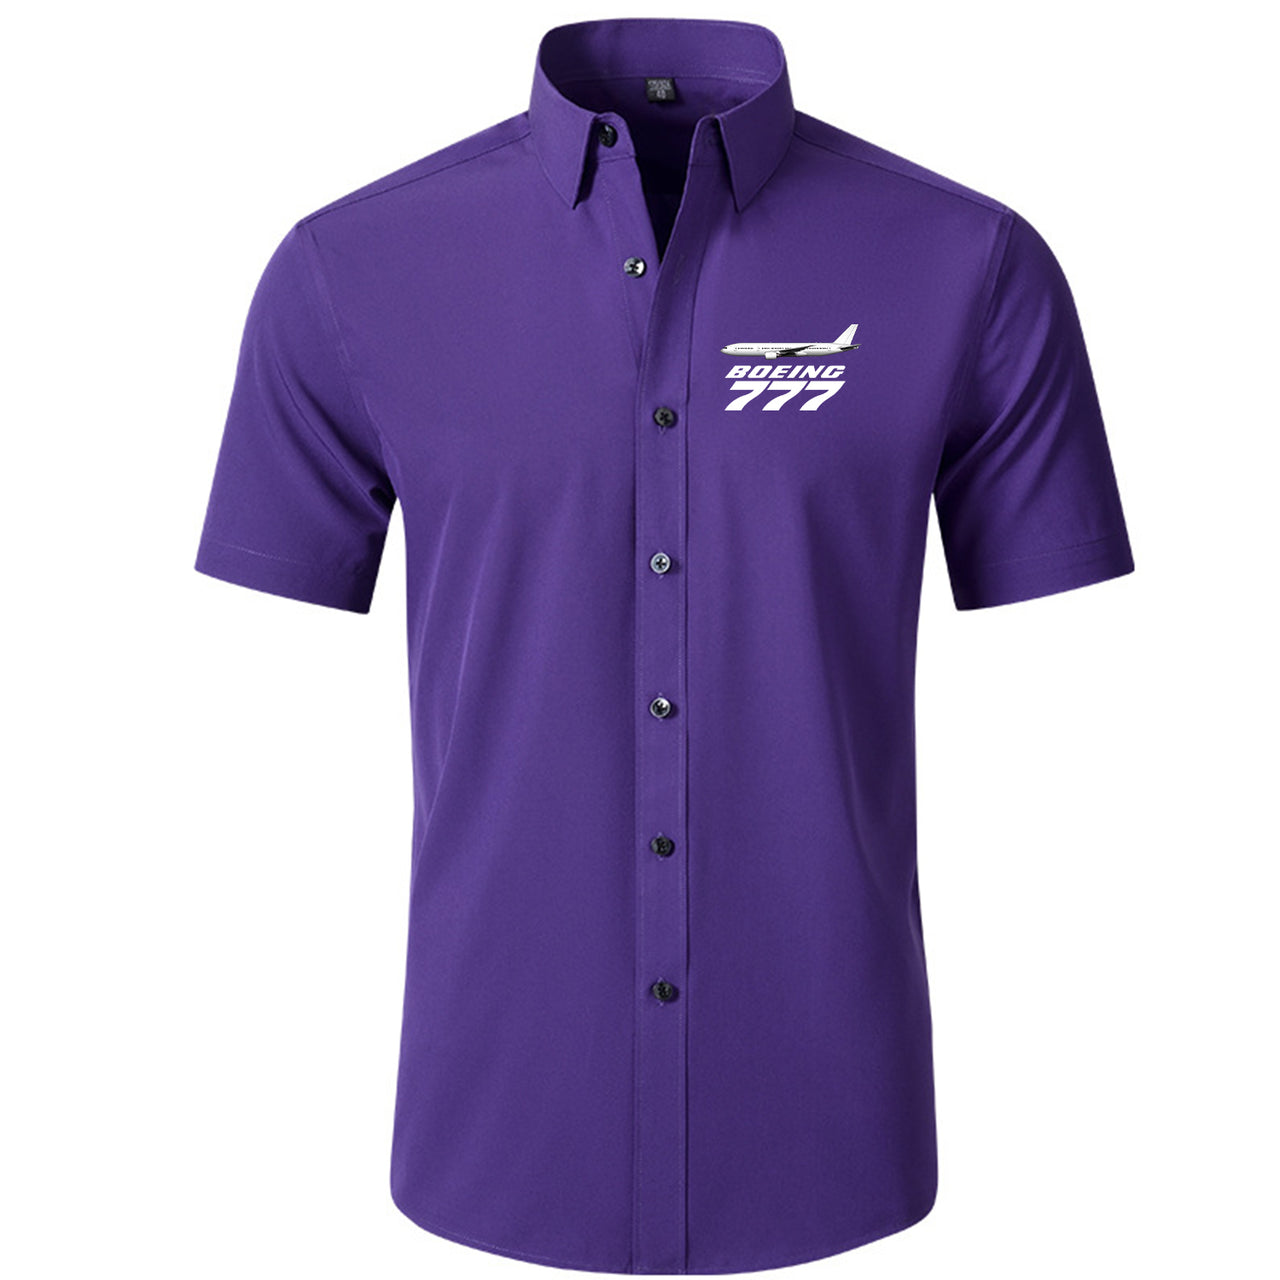 The Boeing 777 Designed Short Sleeve Shirts